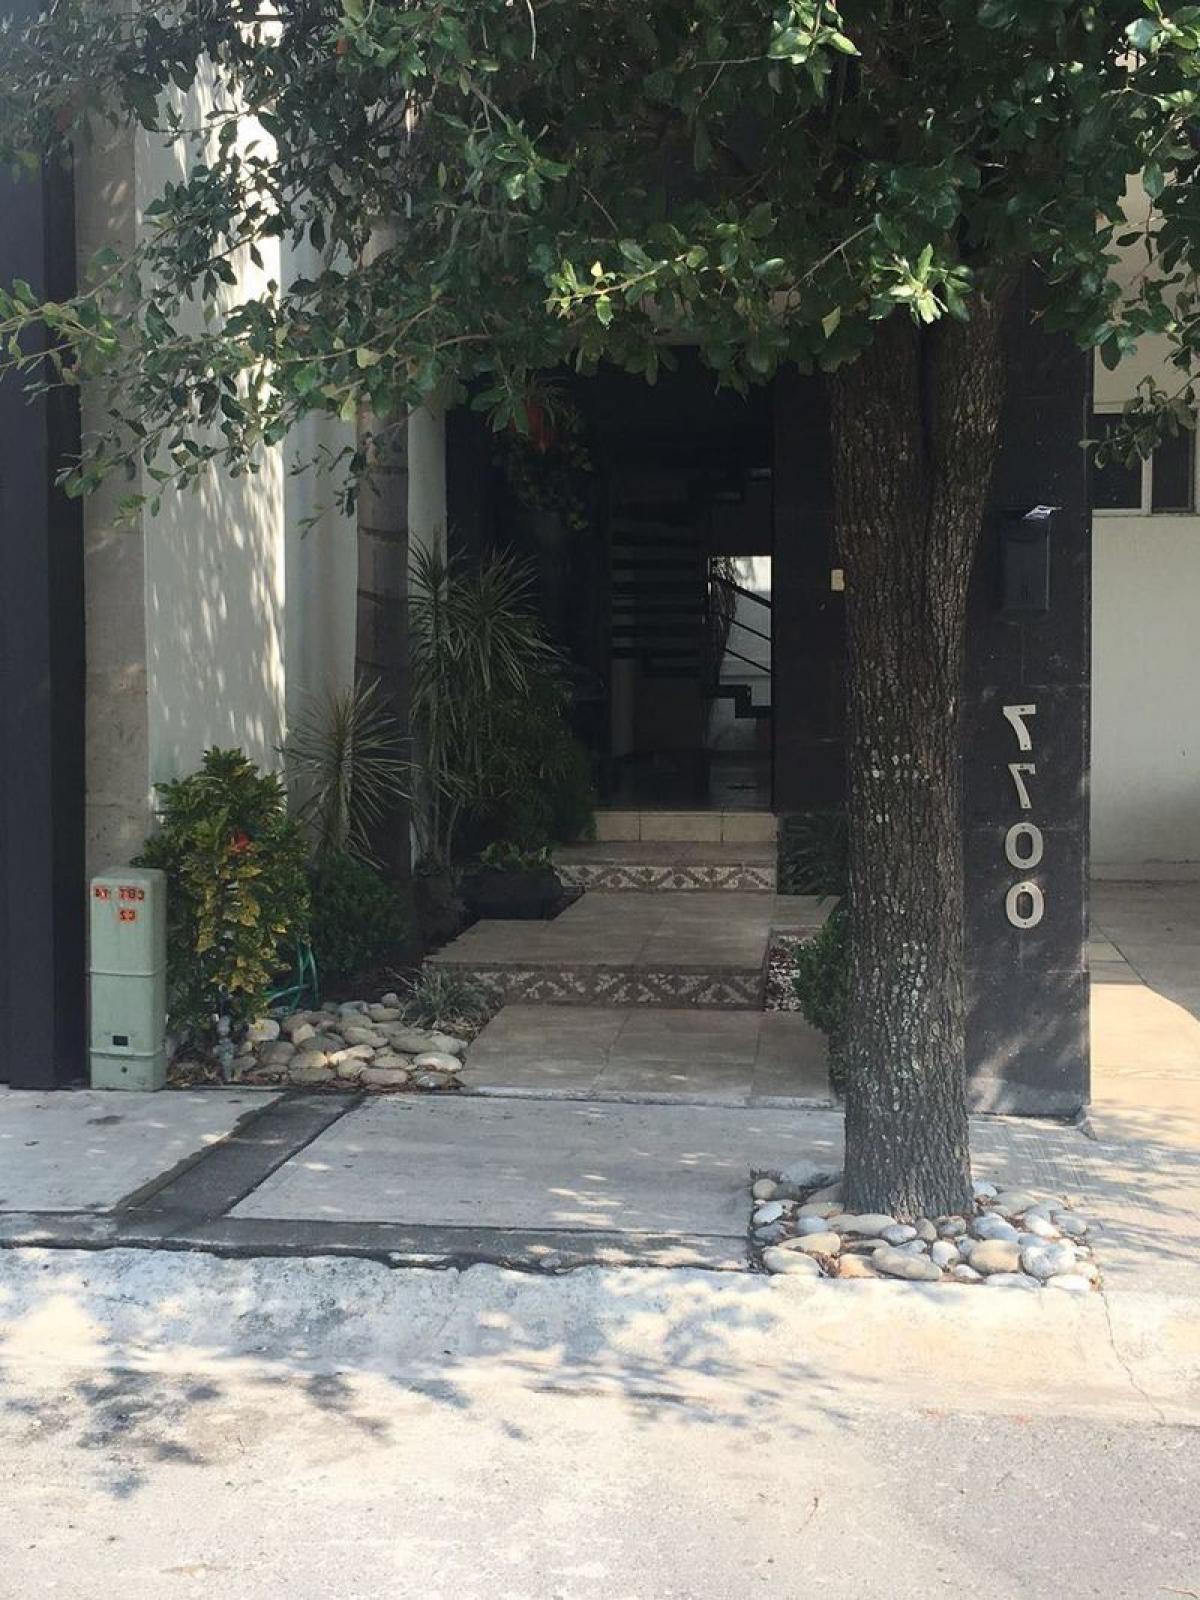 Picture of Home For Sale in Monterrey, Nuevo Leon, Mexico